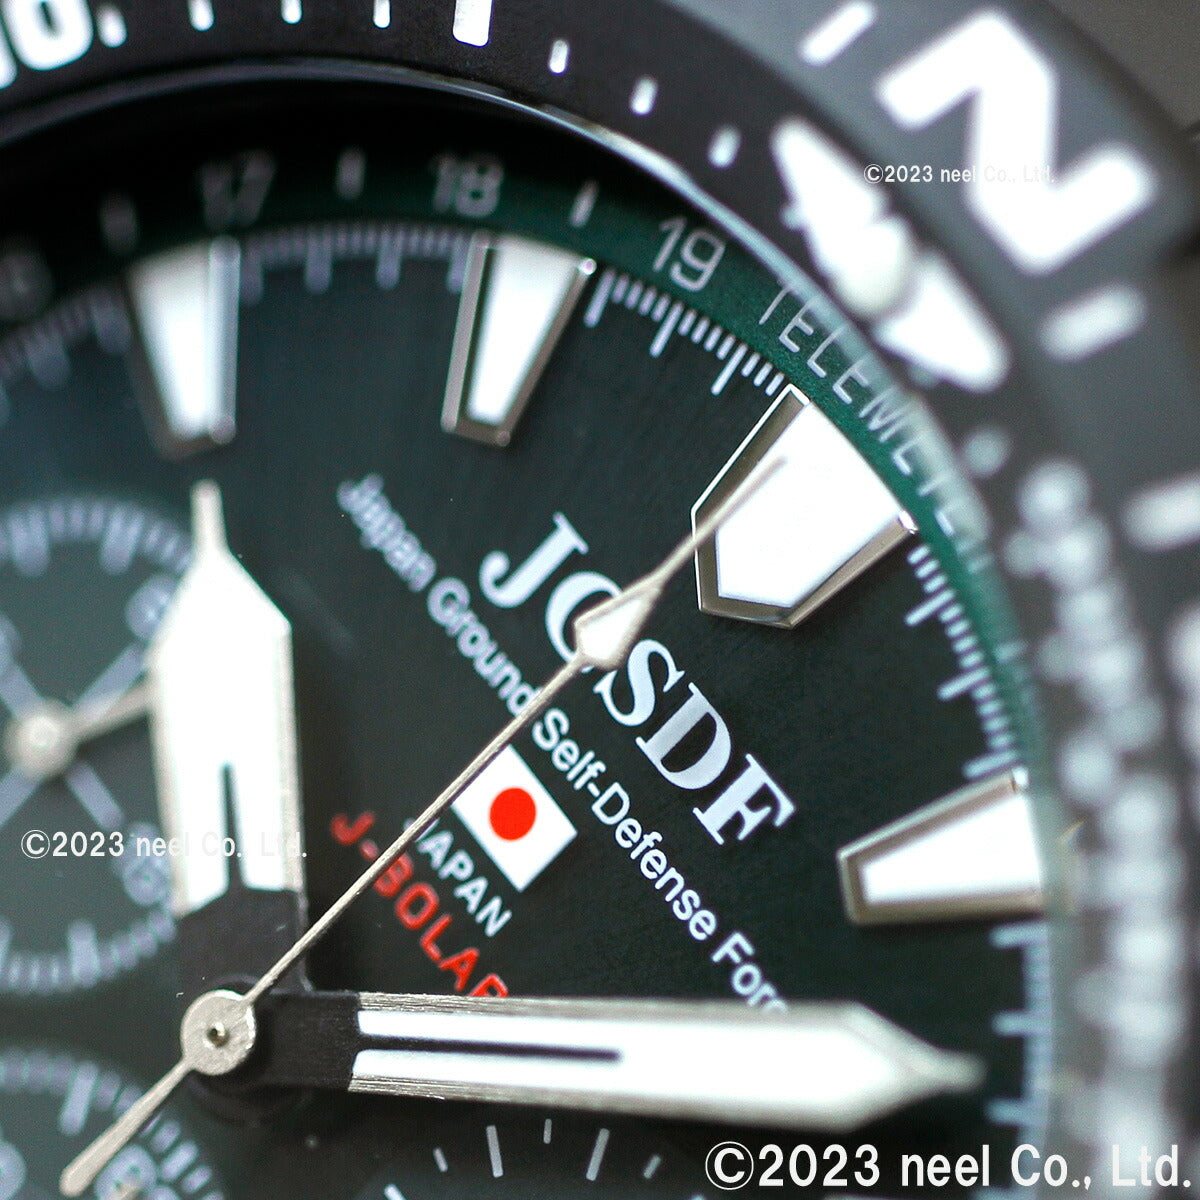 ケンテックス KENTEX ソーラー 腕時計 時計 メンズ JGSDF 陸上自衛隊 ソーラープロ JSDF SOLAR Pro クロノグラフ 日本製 S801M-1